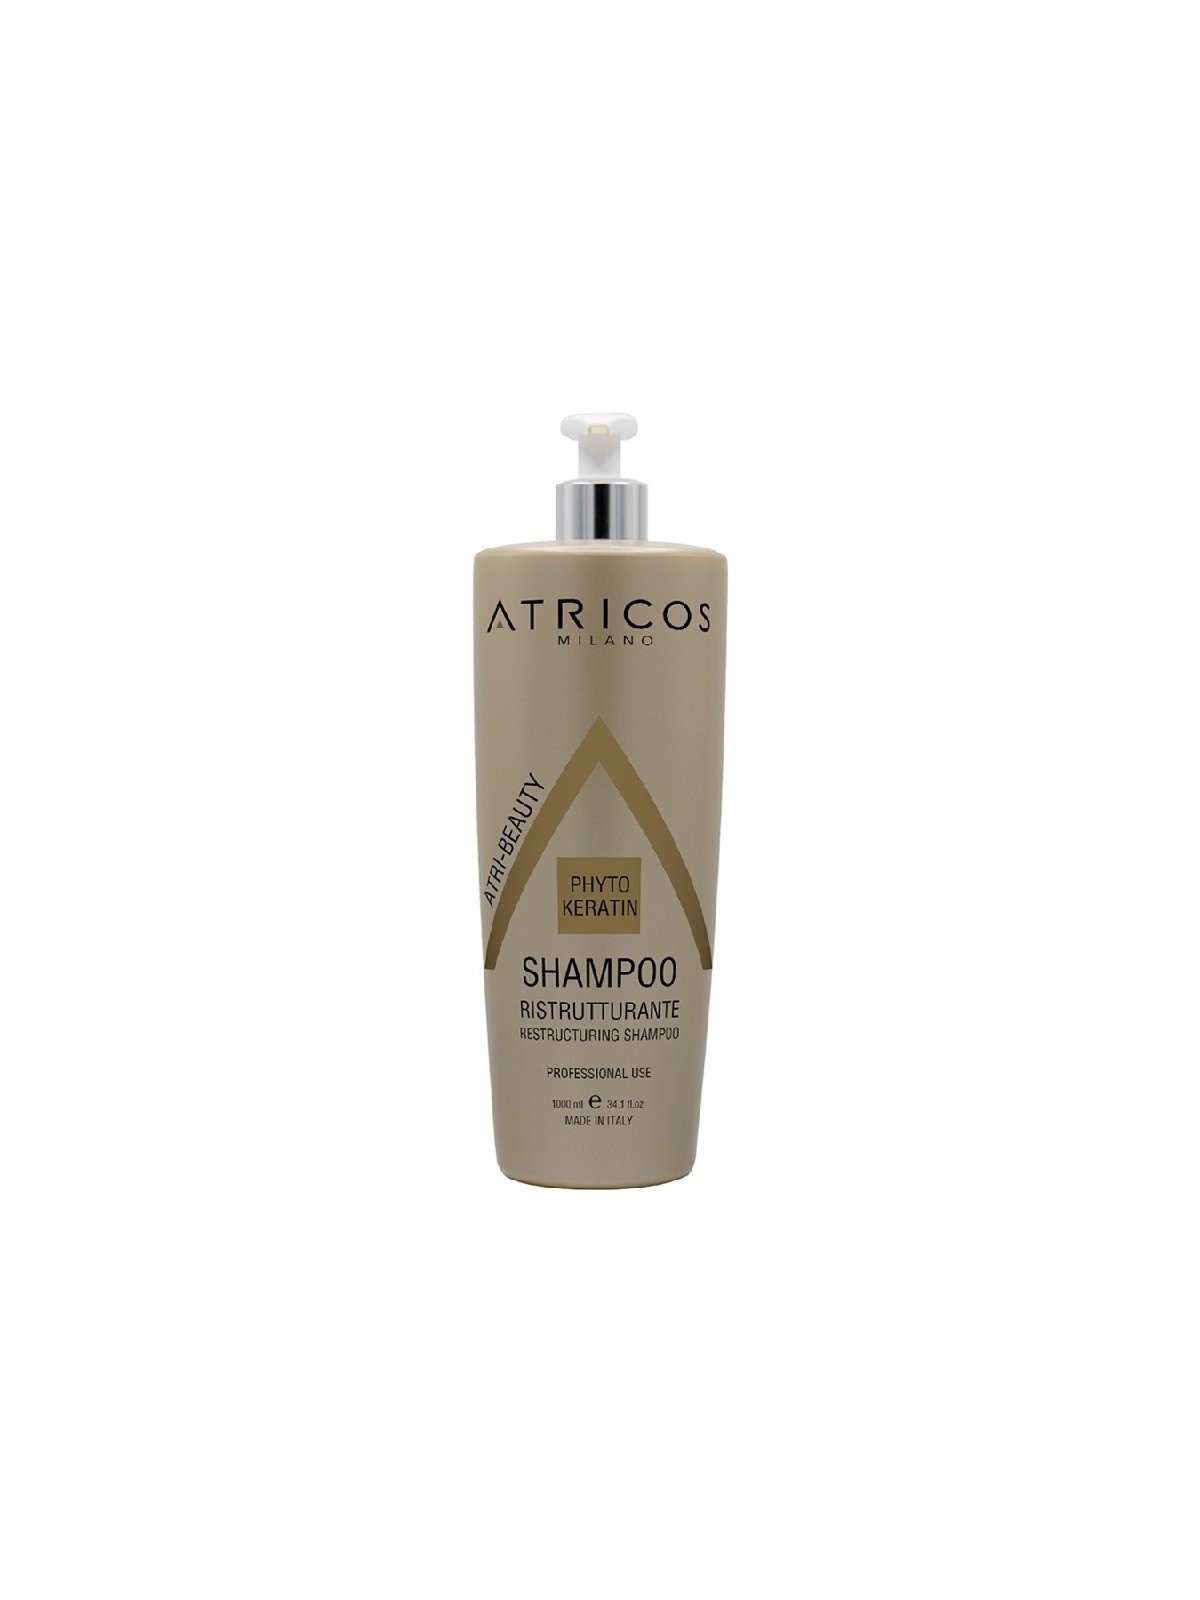 Shampoo ristrutturante per capelli danneggiati